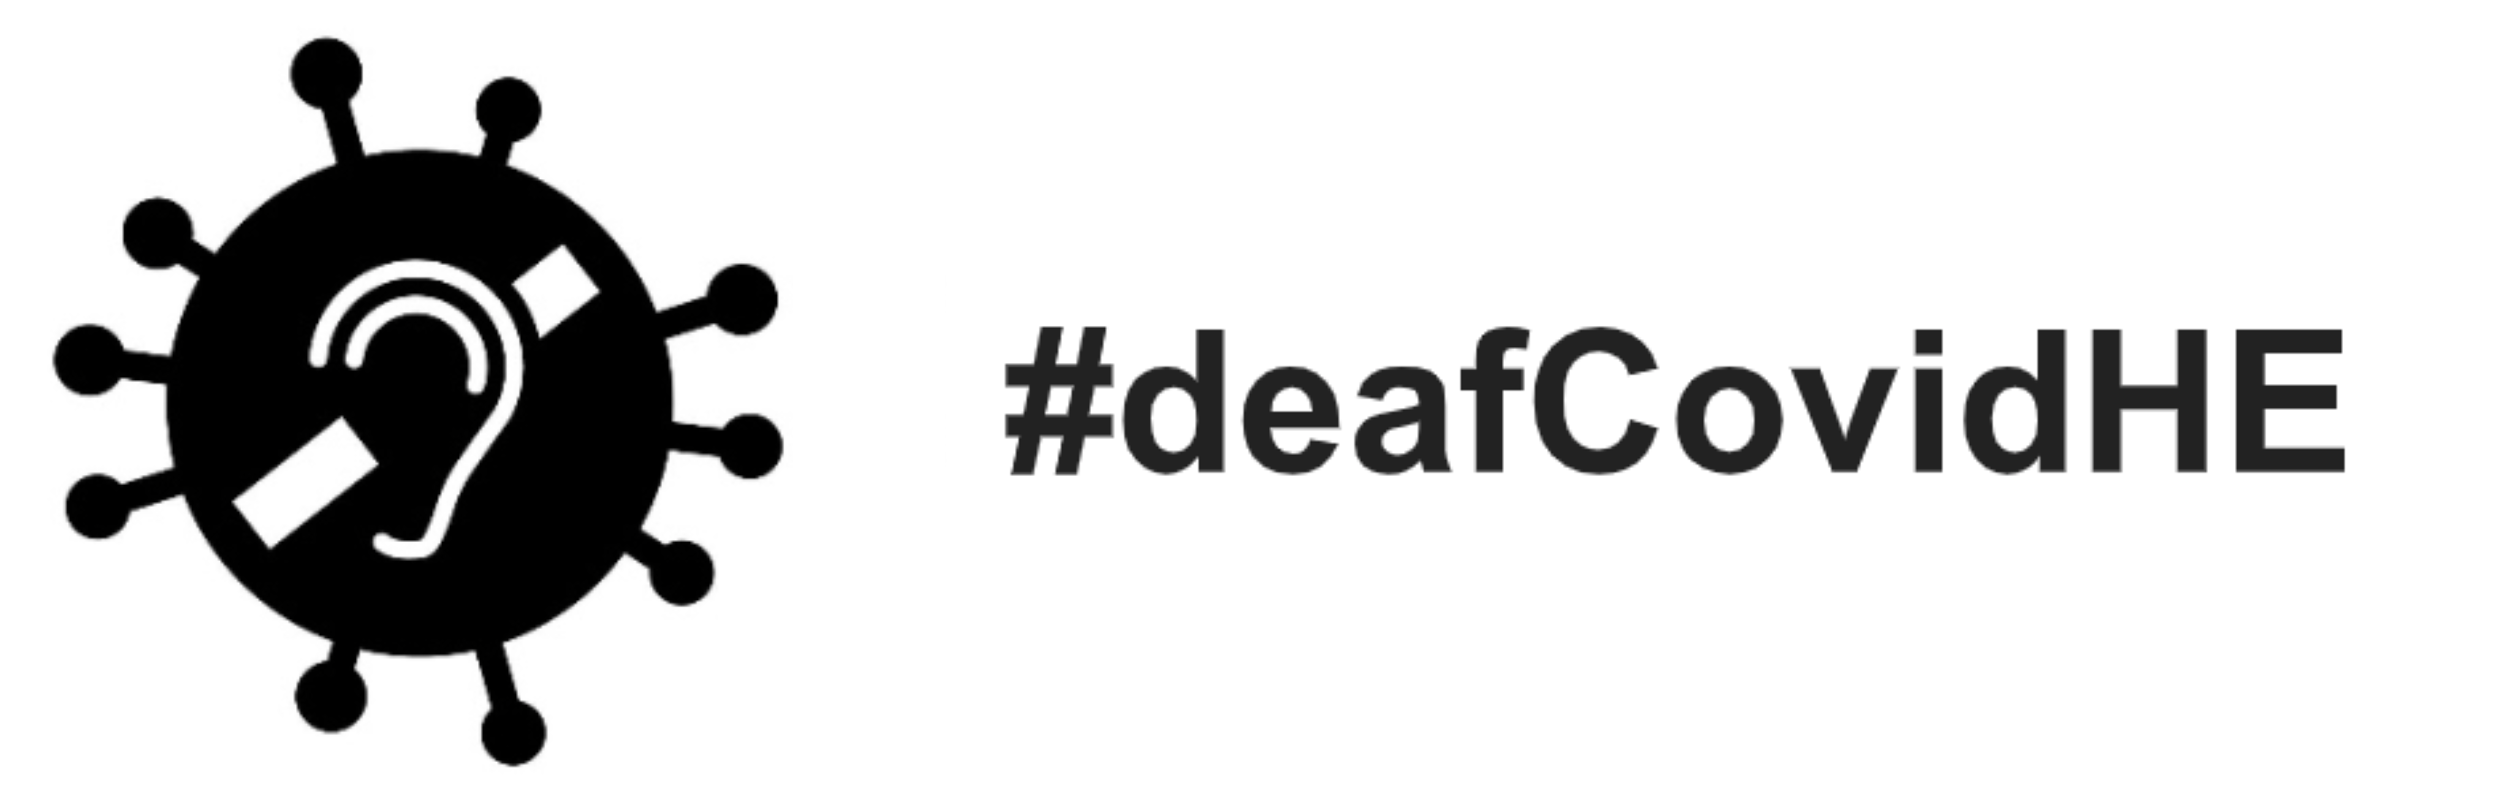 #deafcovidHE